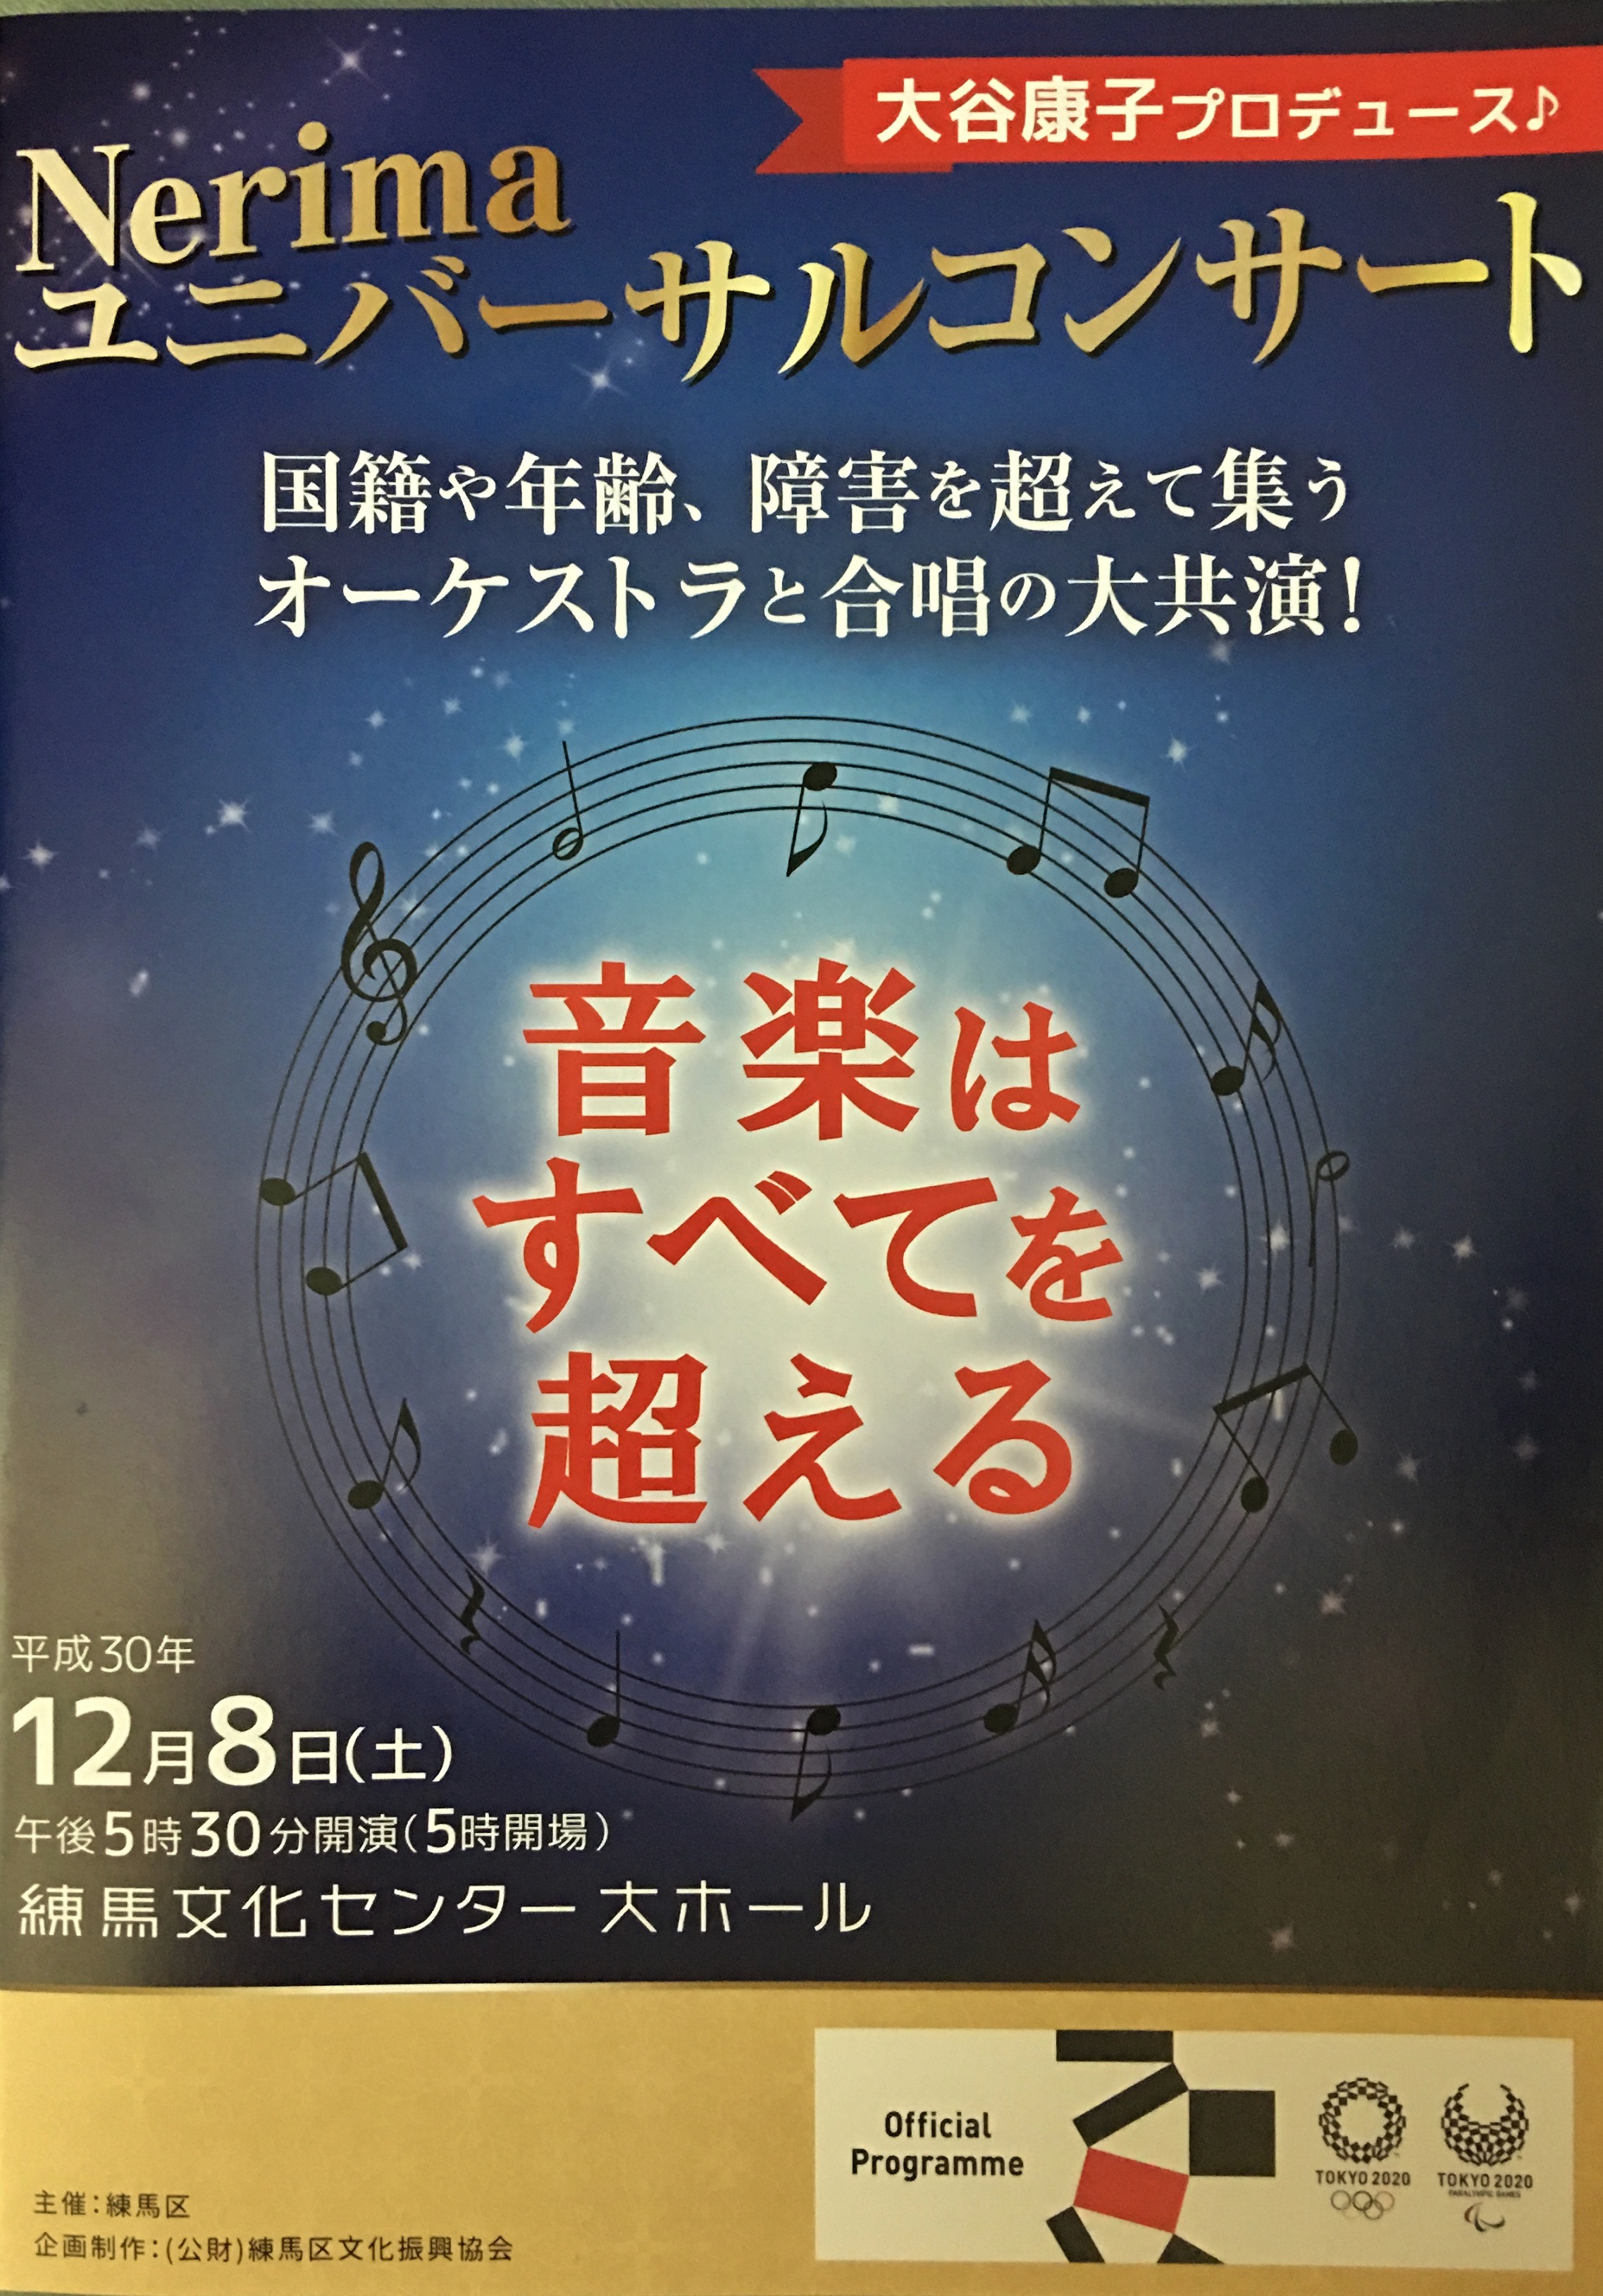 Nerimaユニバーサルコンサート～第6シーズン初舞台～